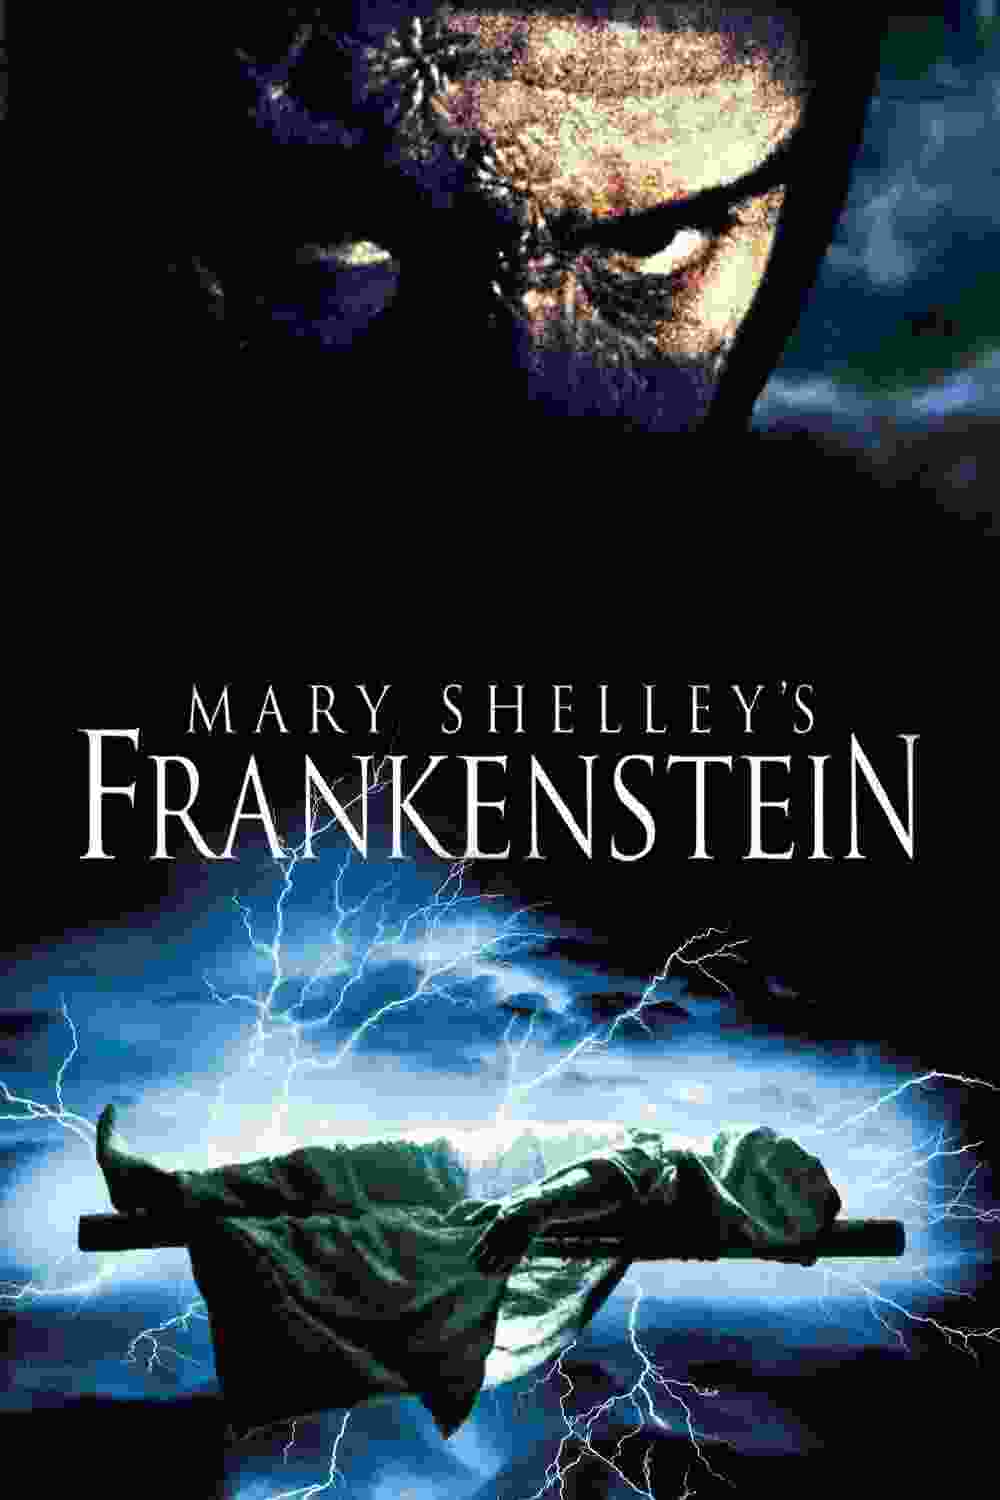 Mary Shelley's Frankenstein (1994) Robert De Niro